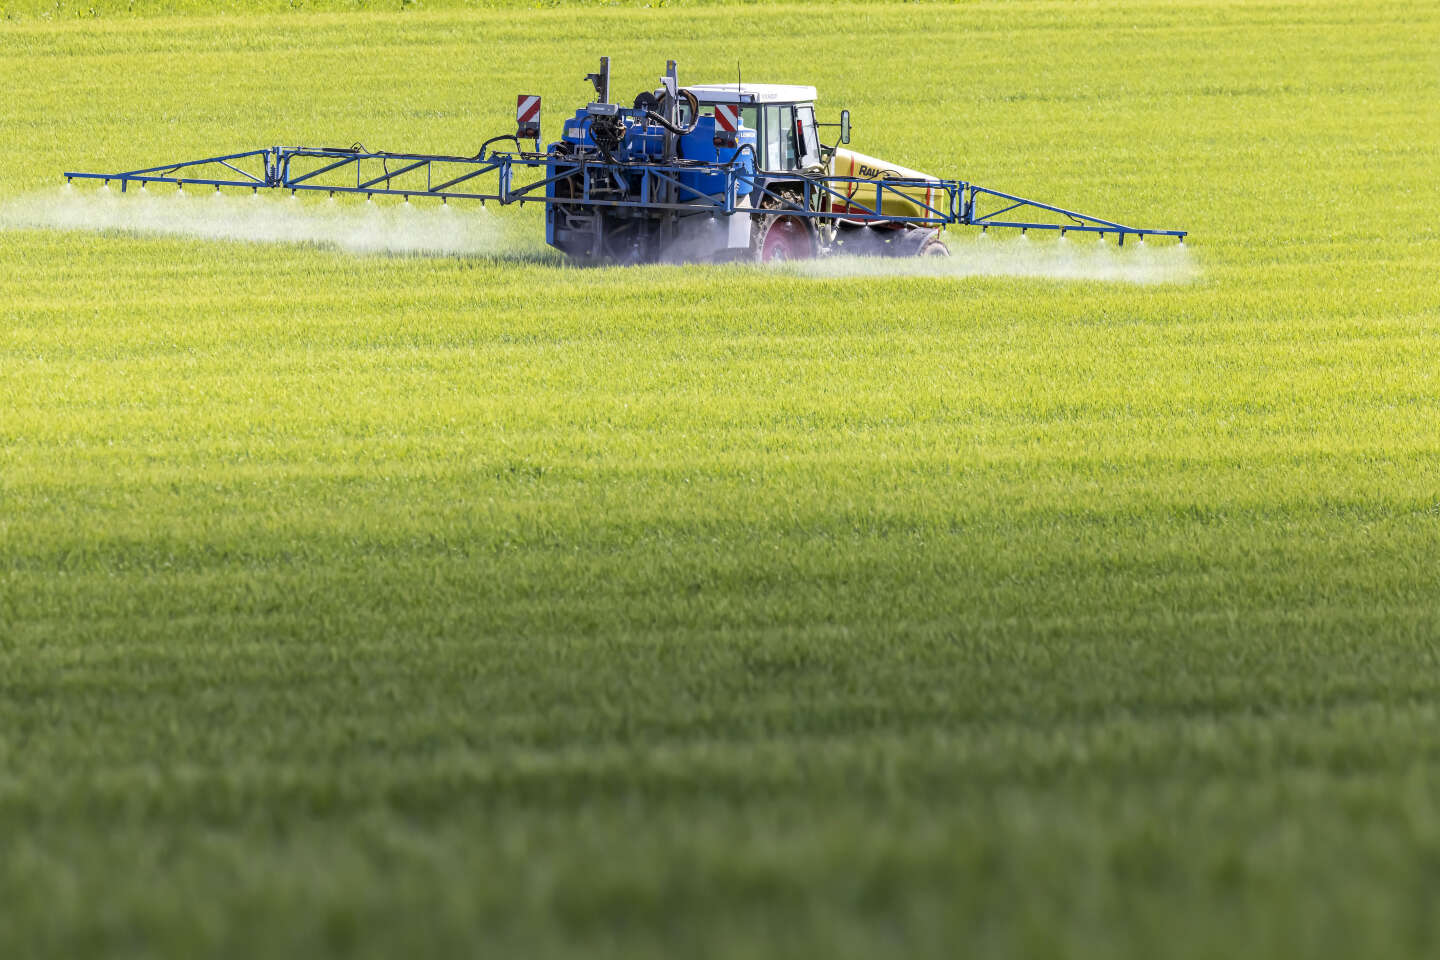 Les parlementaires se penchent sur l’incapacité des pouvoirs publics à contrôler l’usage des pesticides